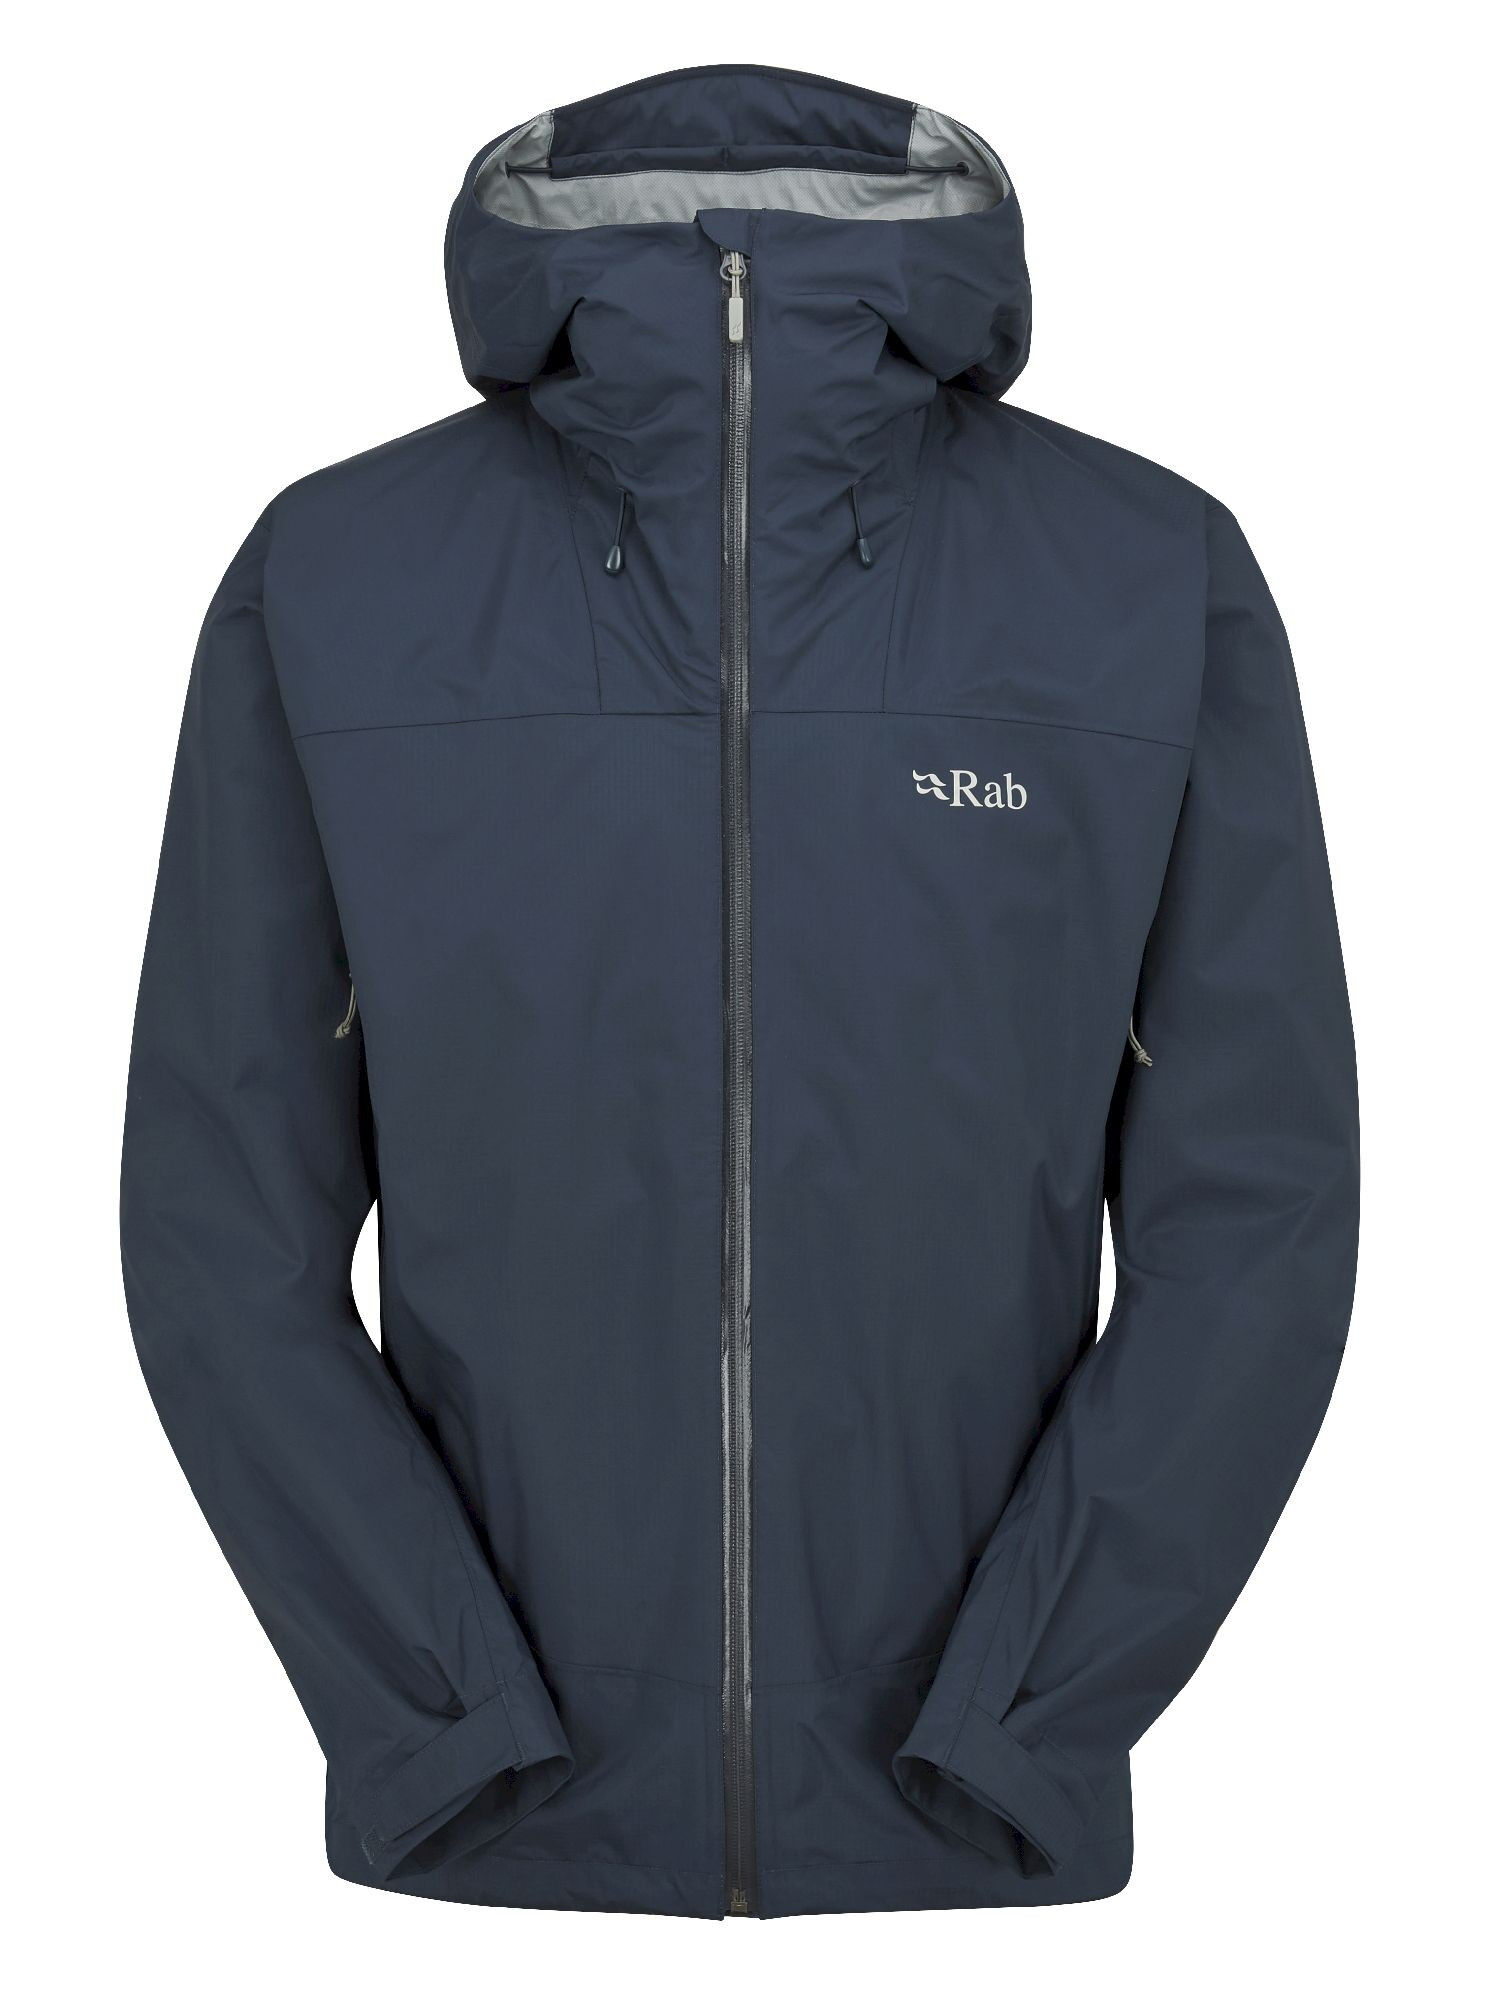 Rab Downpour Plus 2.0 Jacket - Chaqueta impermeable - Hombre